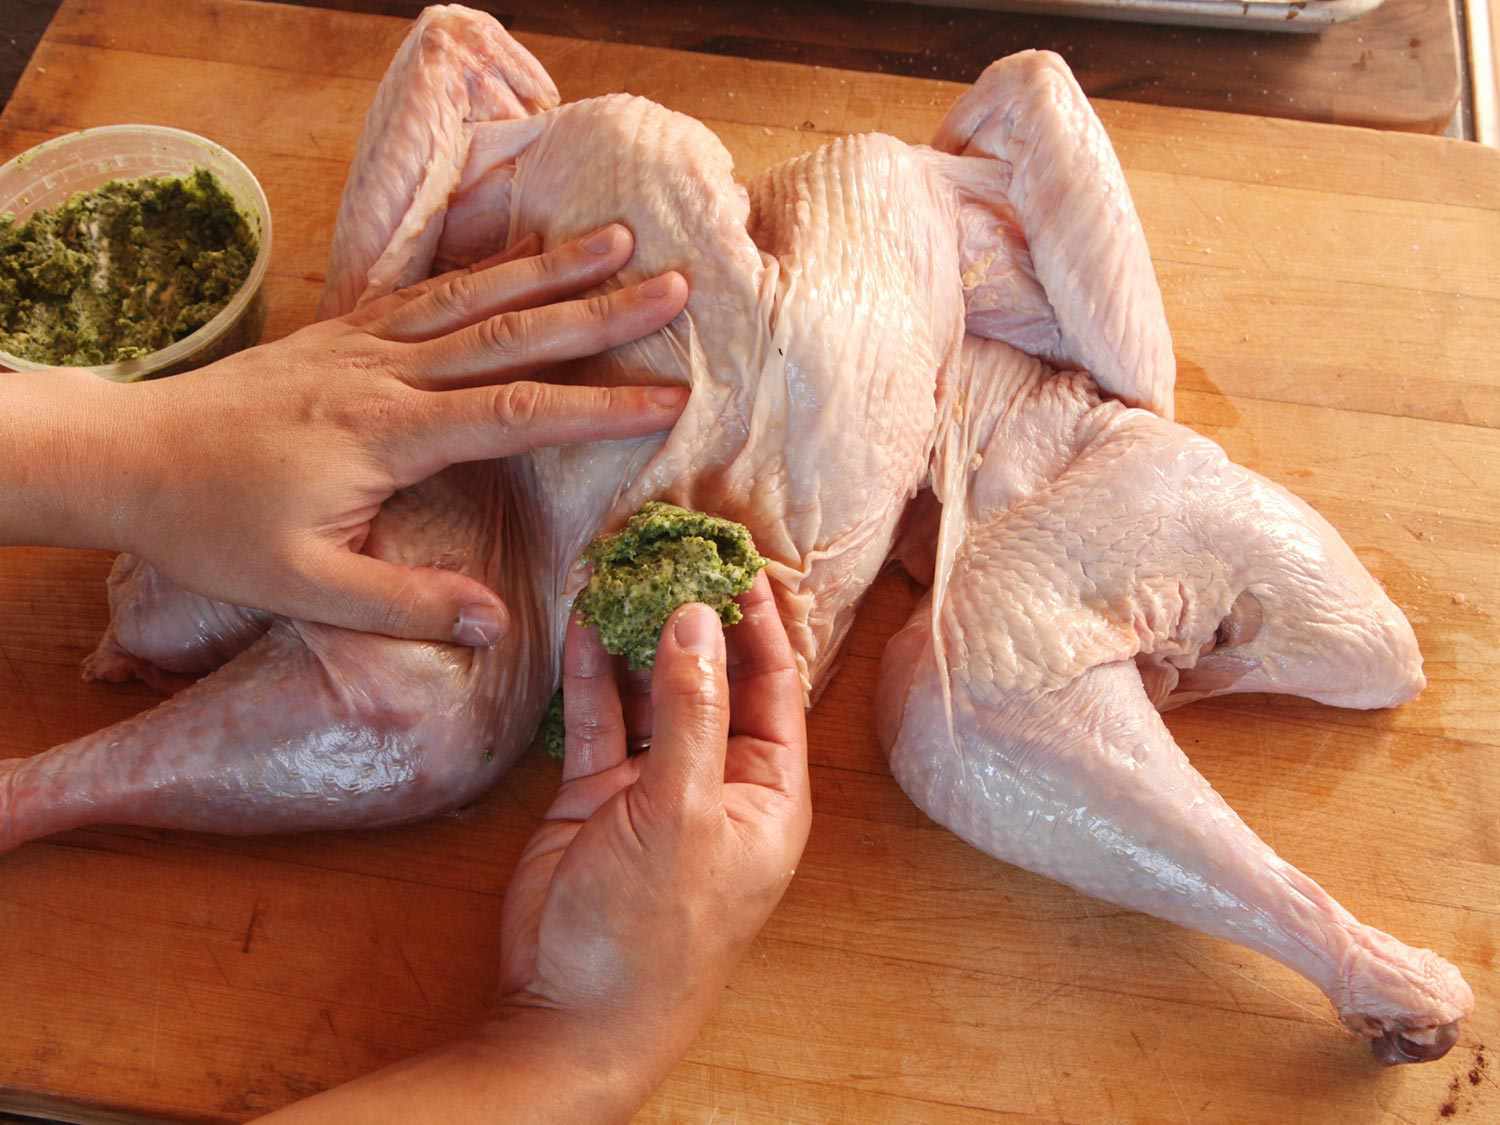 一只手拿着一只未煮熟的火鸡，另一只手拿着一大块香草黄油，准备插入皮肤下面。